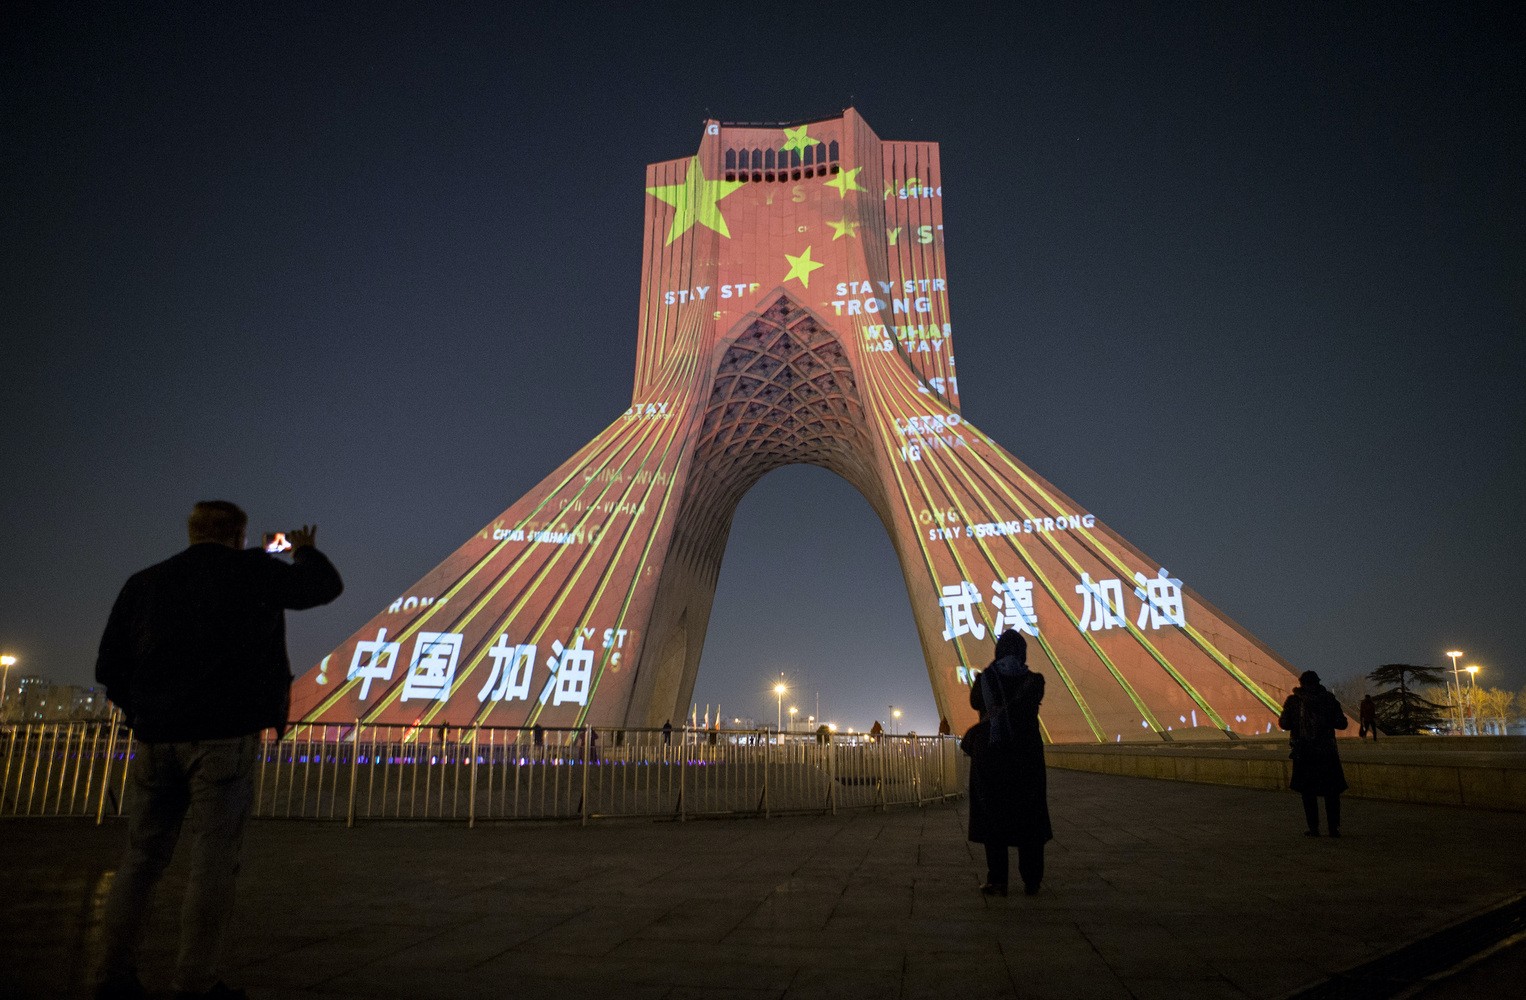 Monumentos exibem mensagem de apoio à China (Foto: Divulgação)